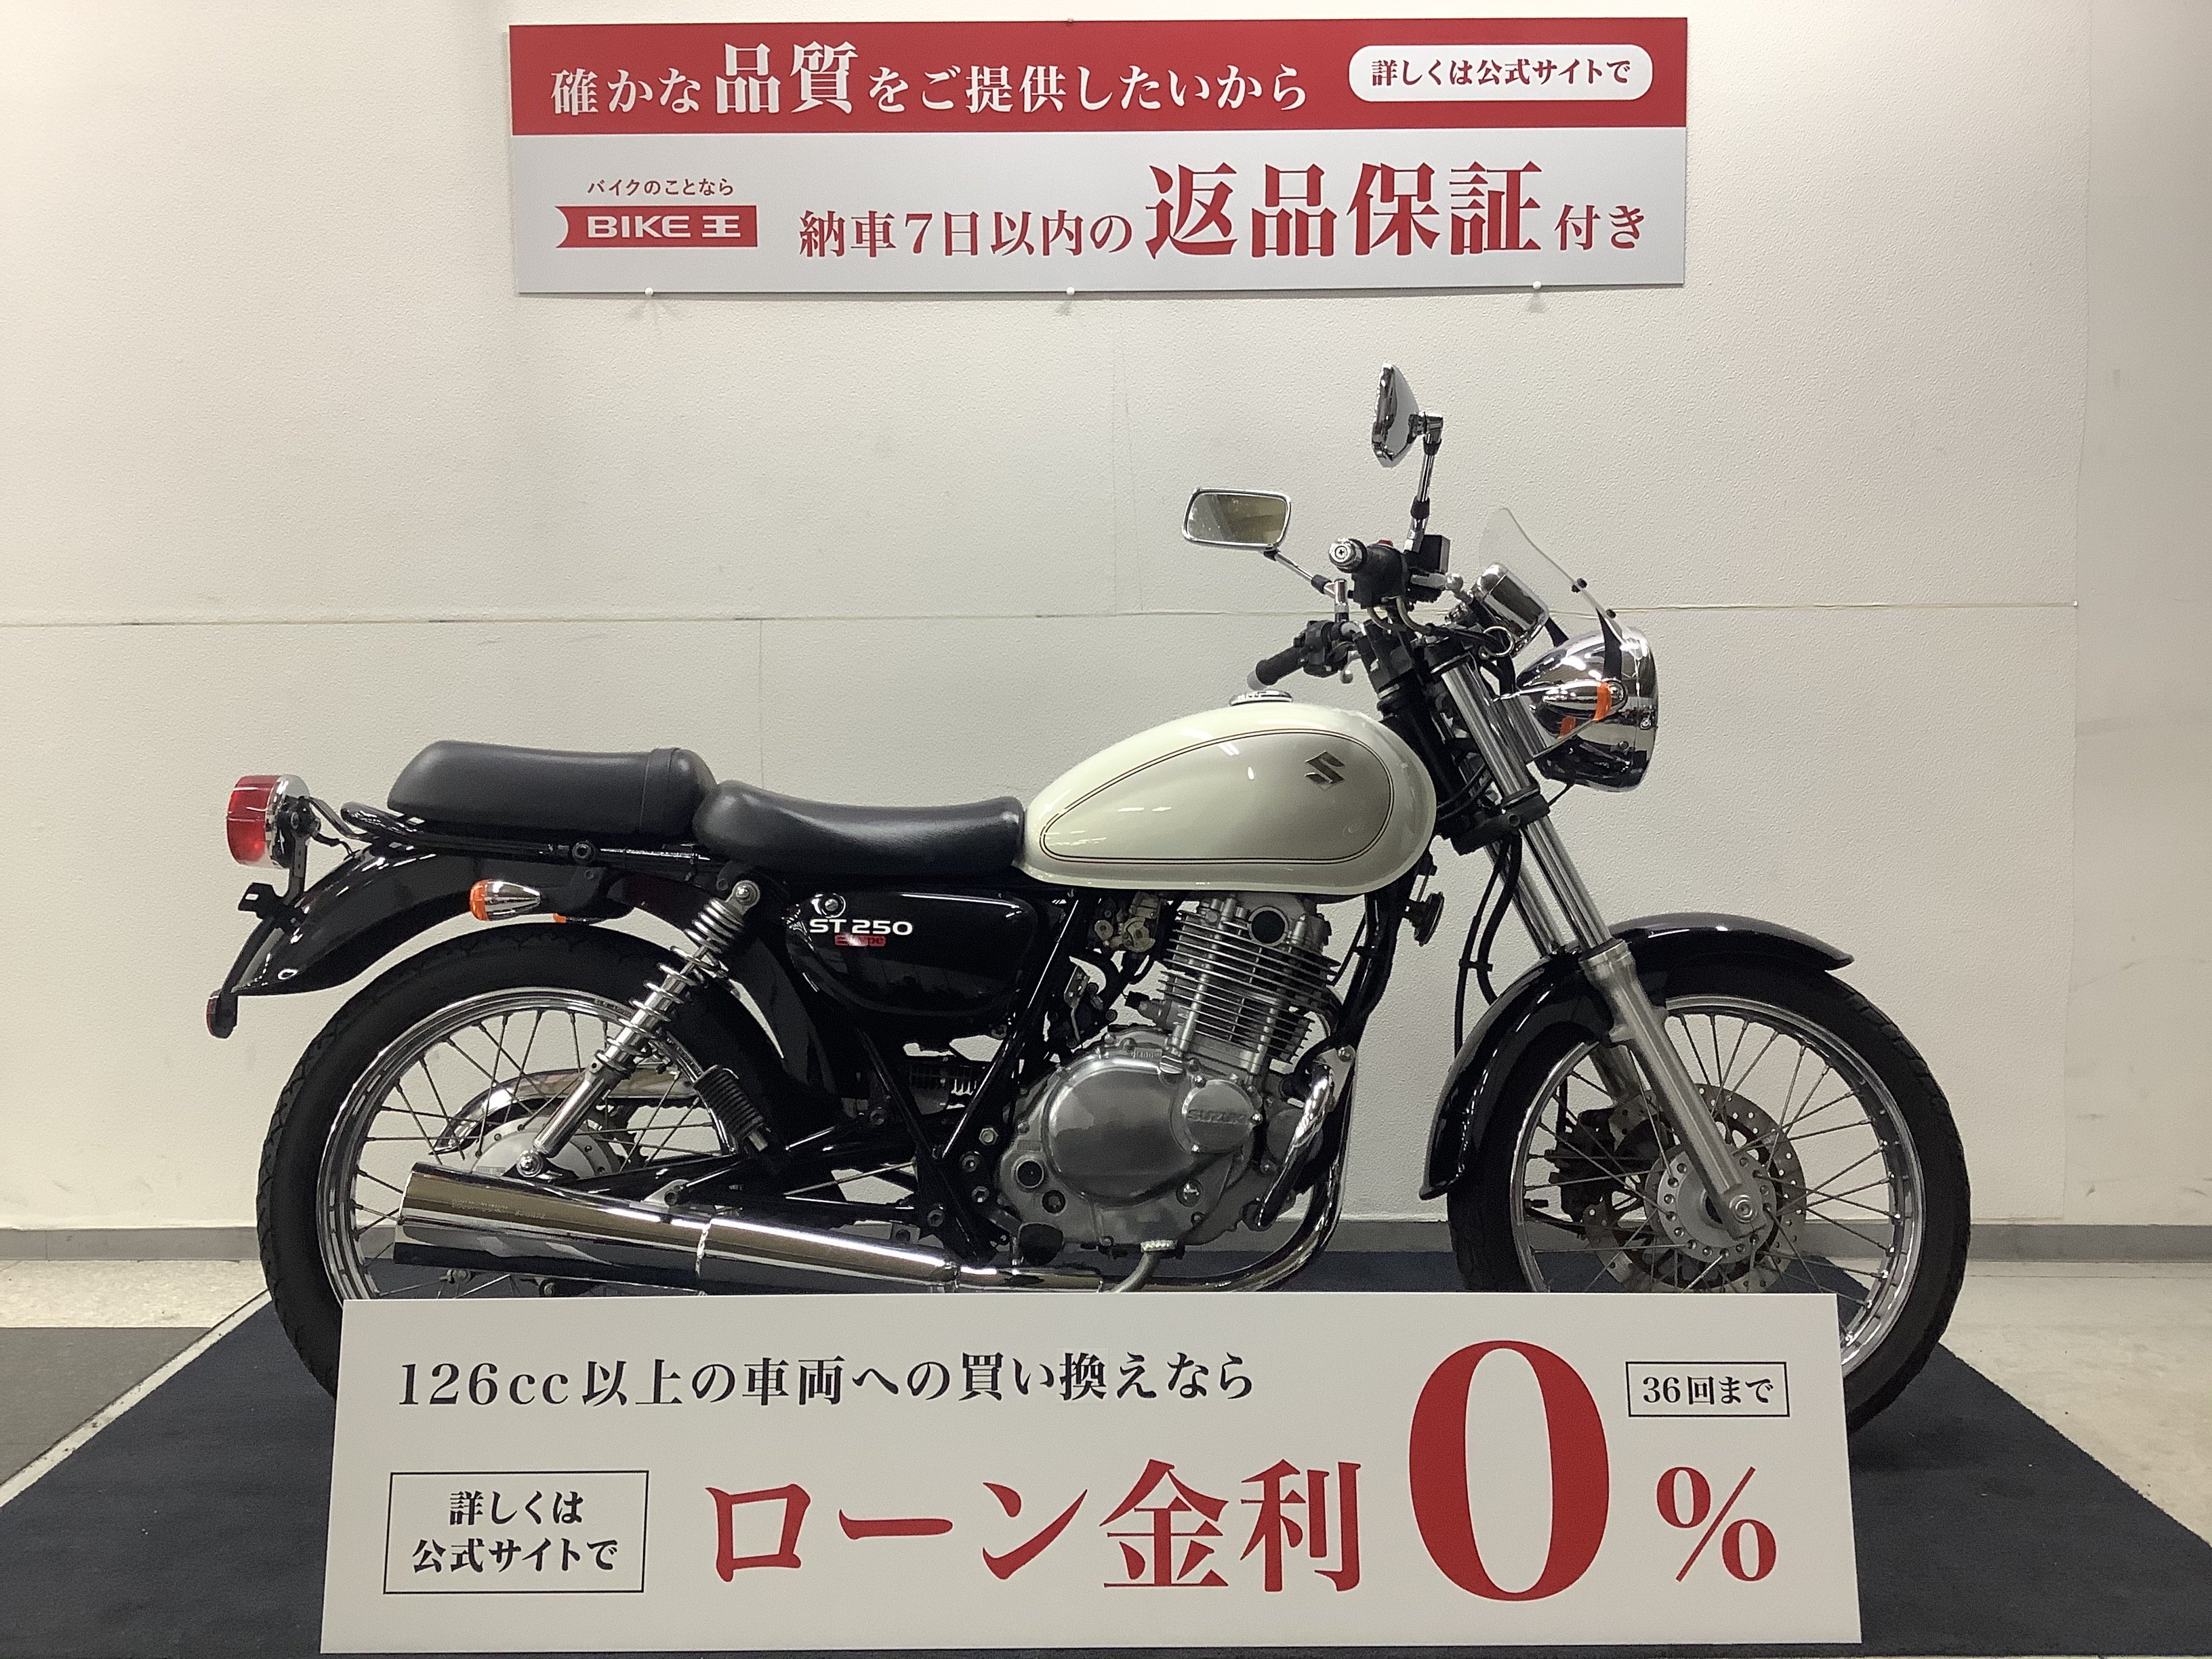 ST250 E-Type NJ4CA型インジェクション | バイク買うなら【バイク王】